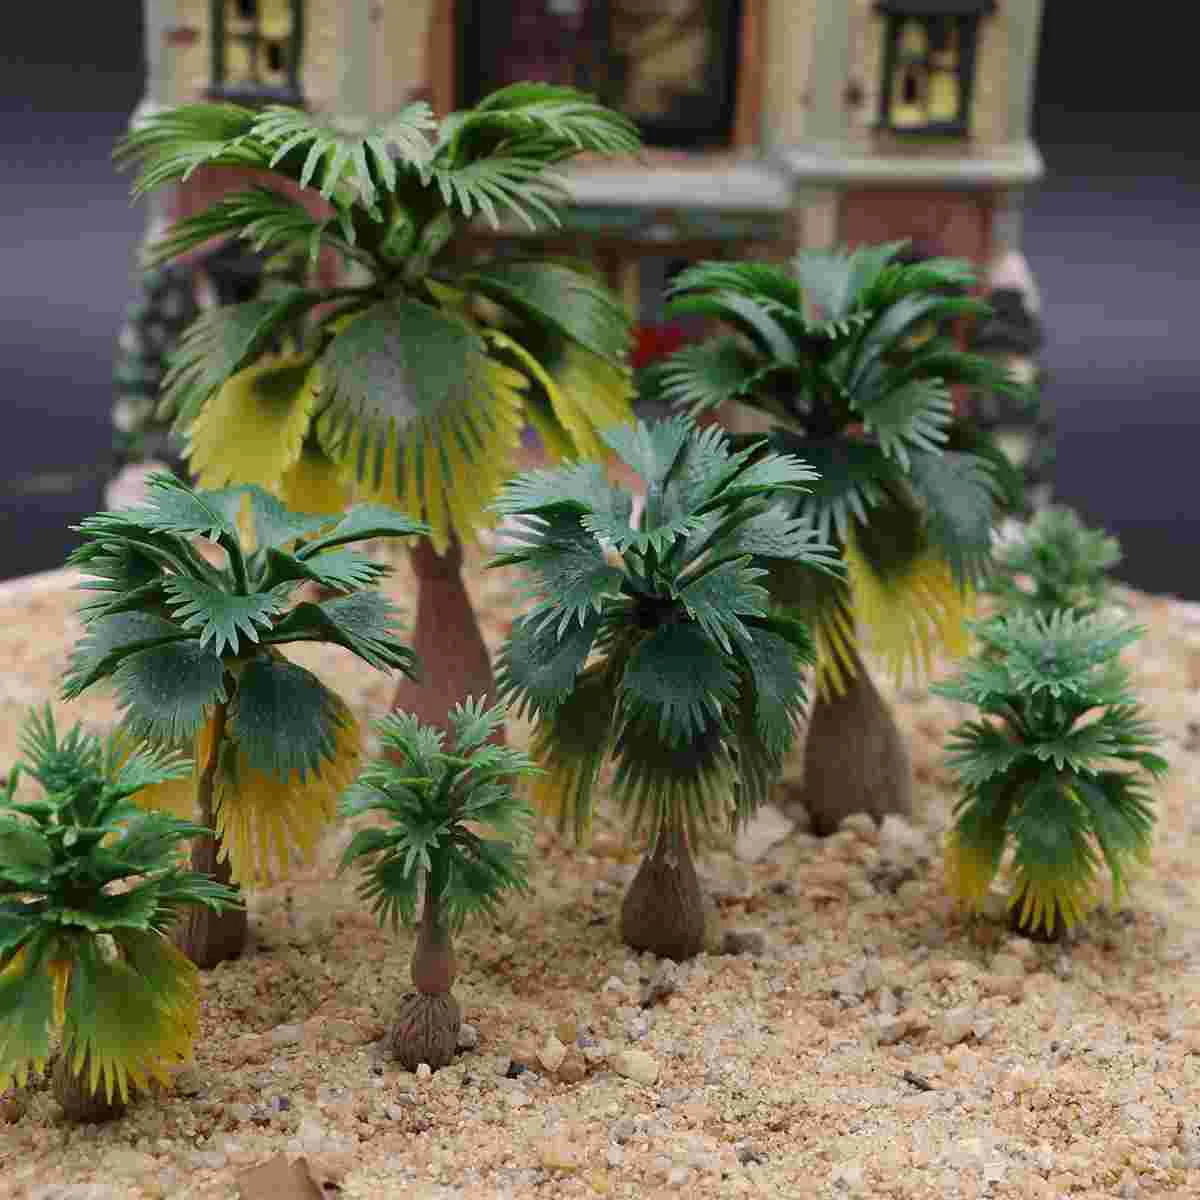 

Модель поезд пальмы тропический лес Пейзаж Поезд железнодорожная архитектура диотома дерево декор искусственная фотография